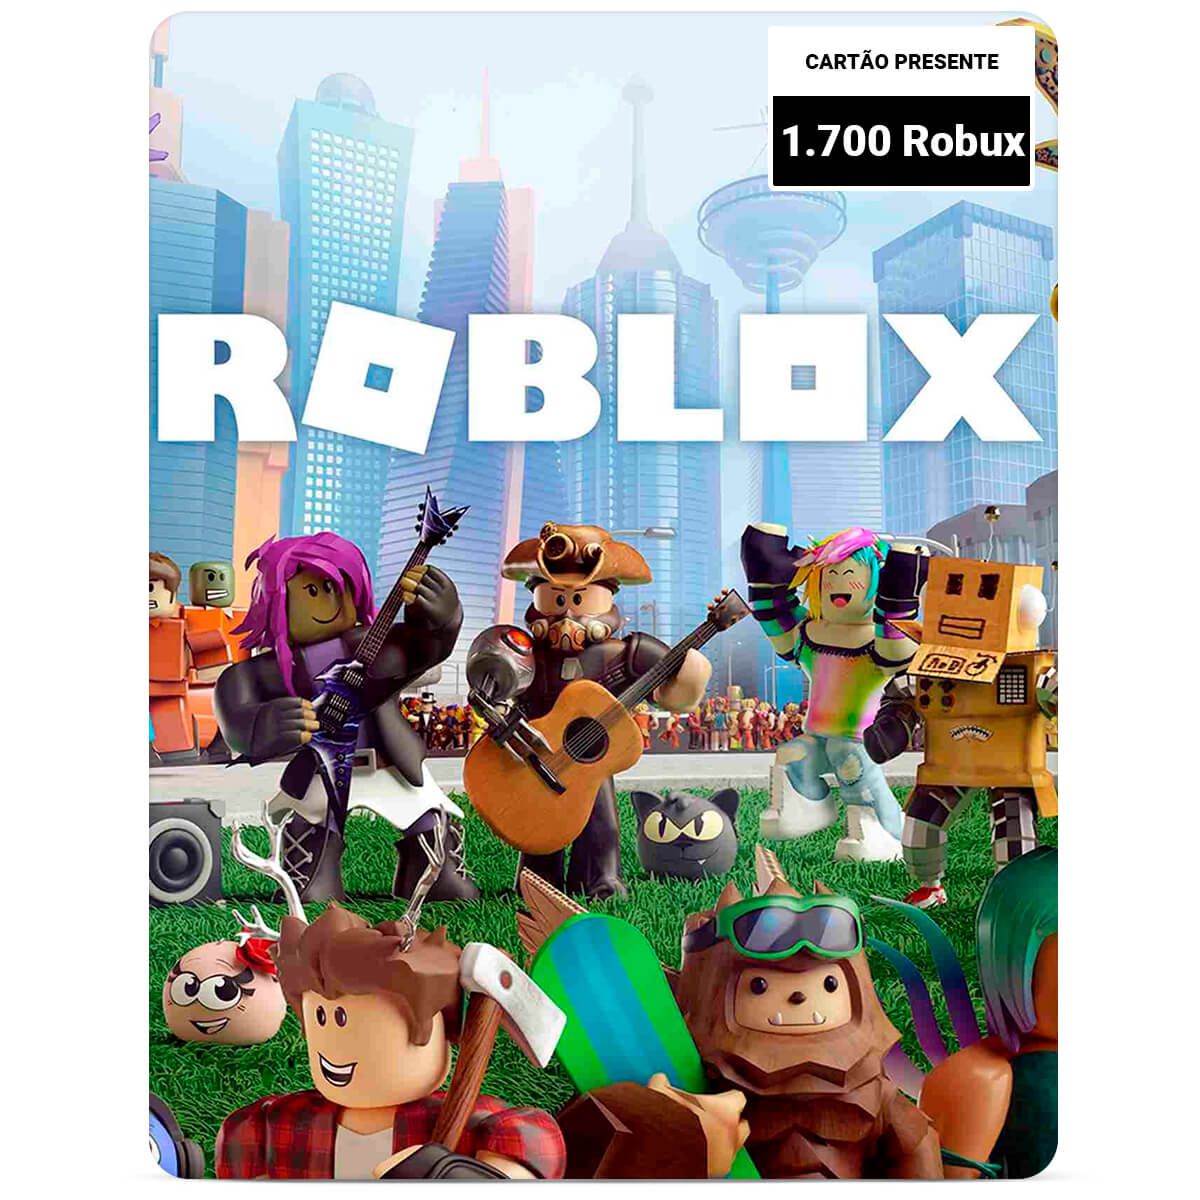 Roblox Cartão de oferta, Comprar um código de resgate Robux